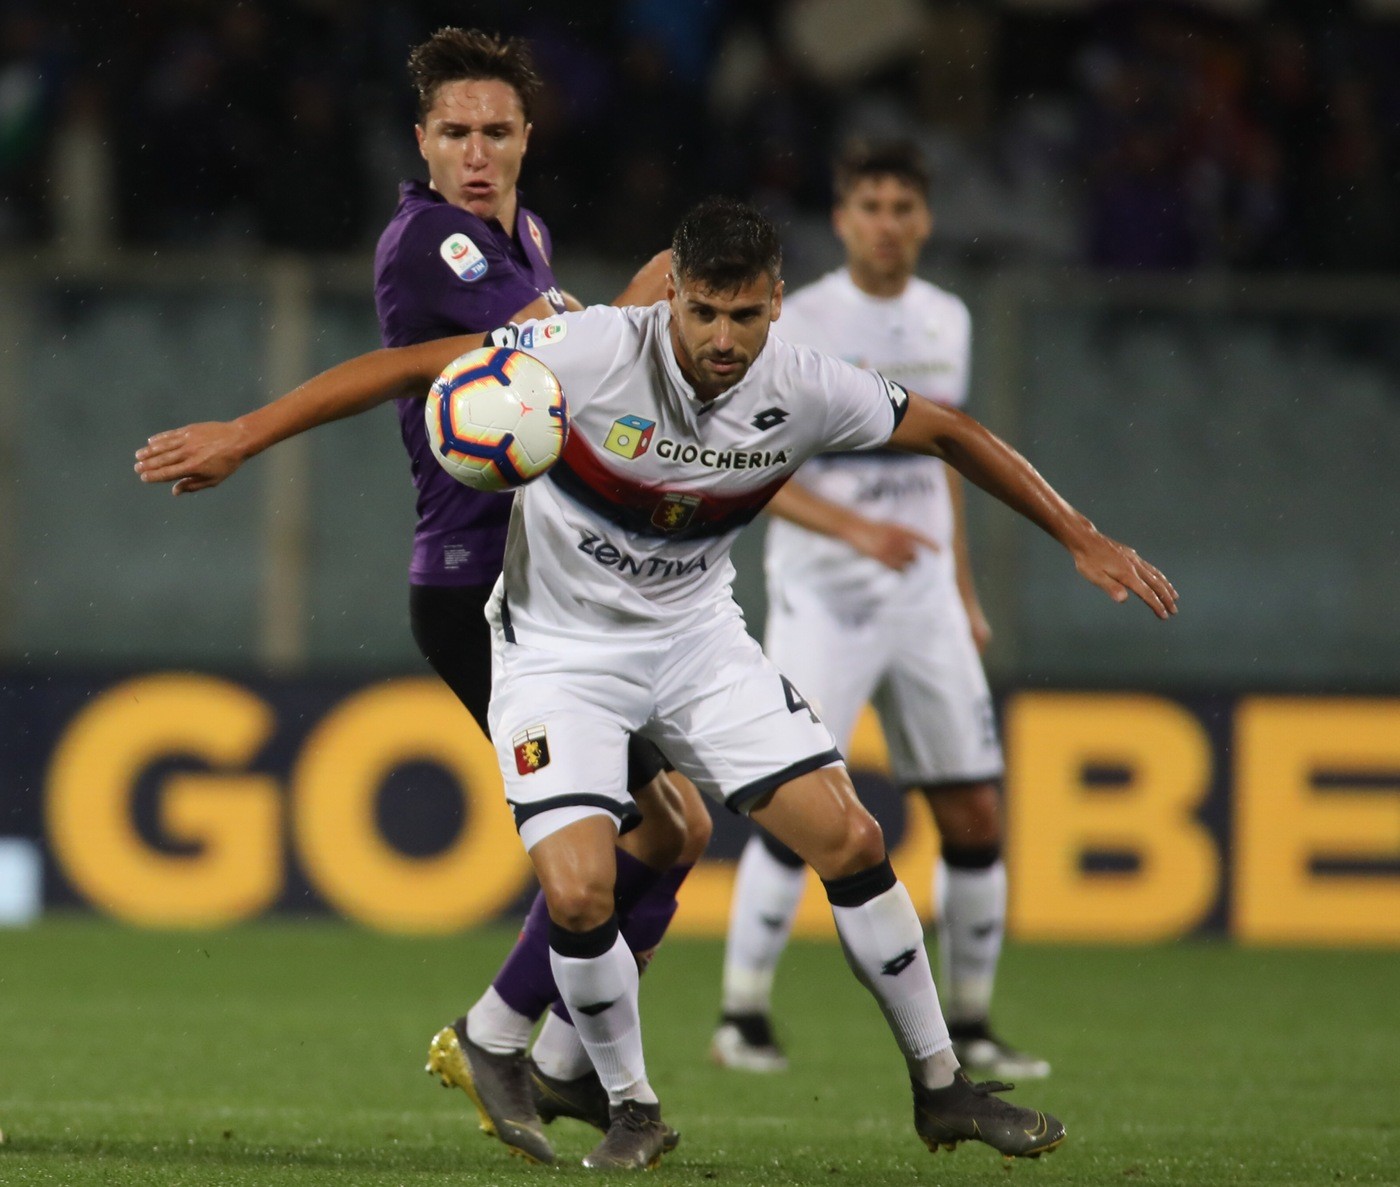 Serie A, Fiorentina e Genoa non si fanno male: reti bianche e salvezza